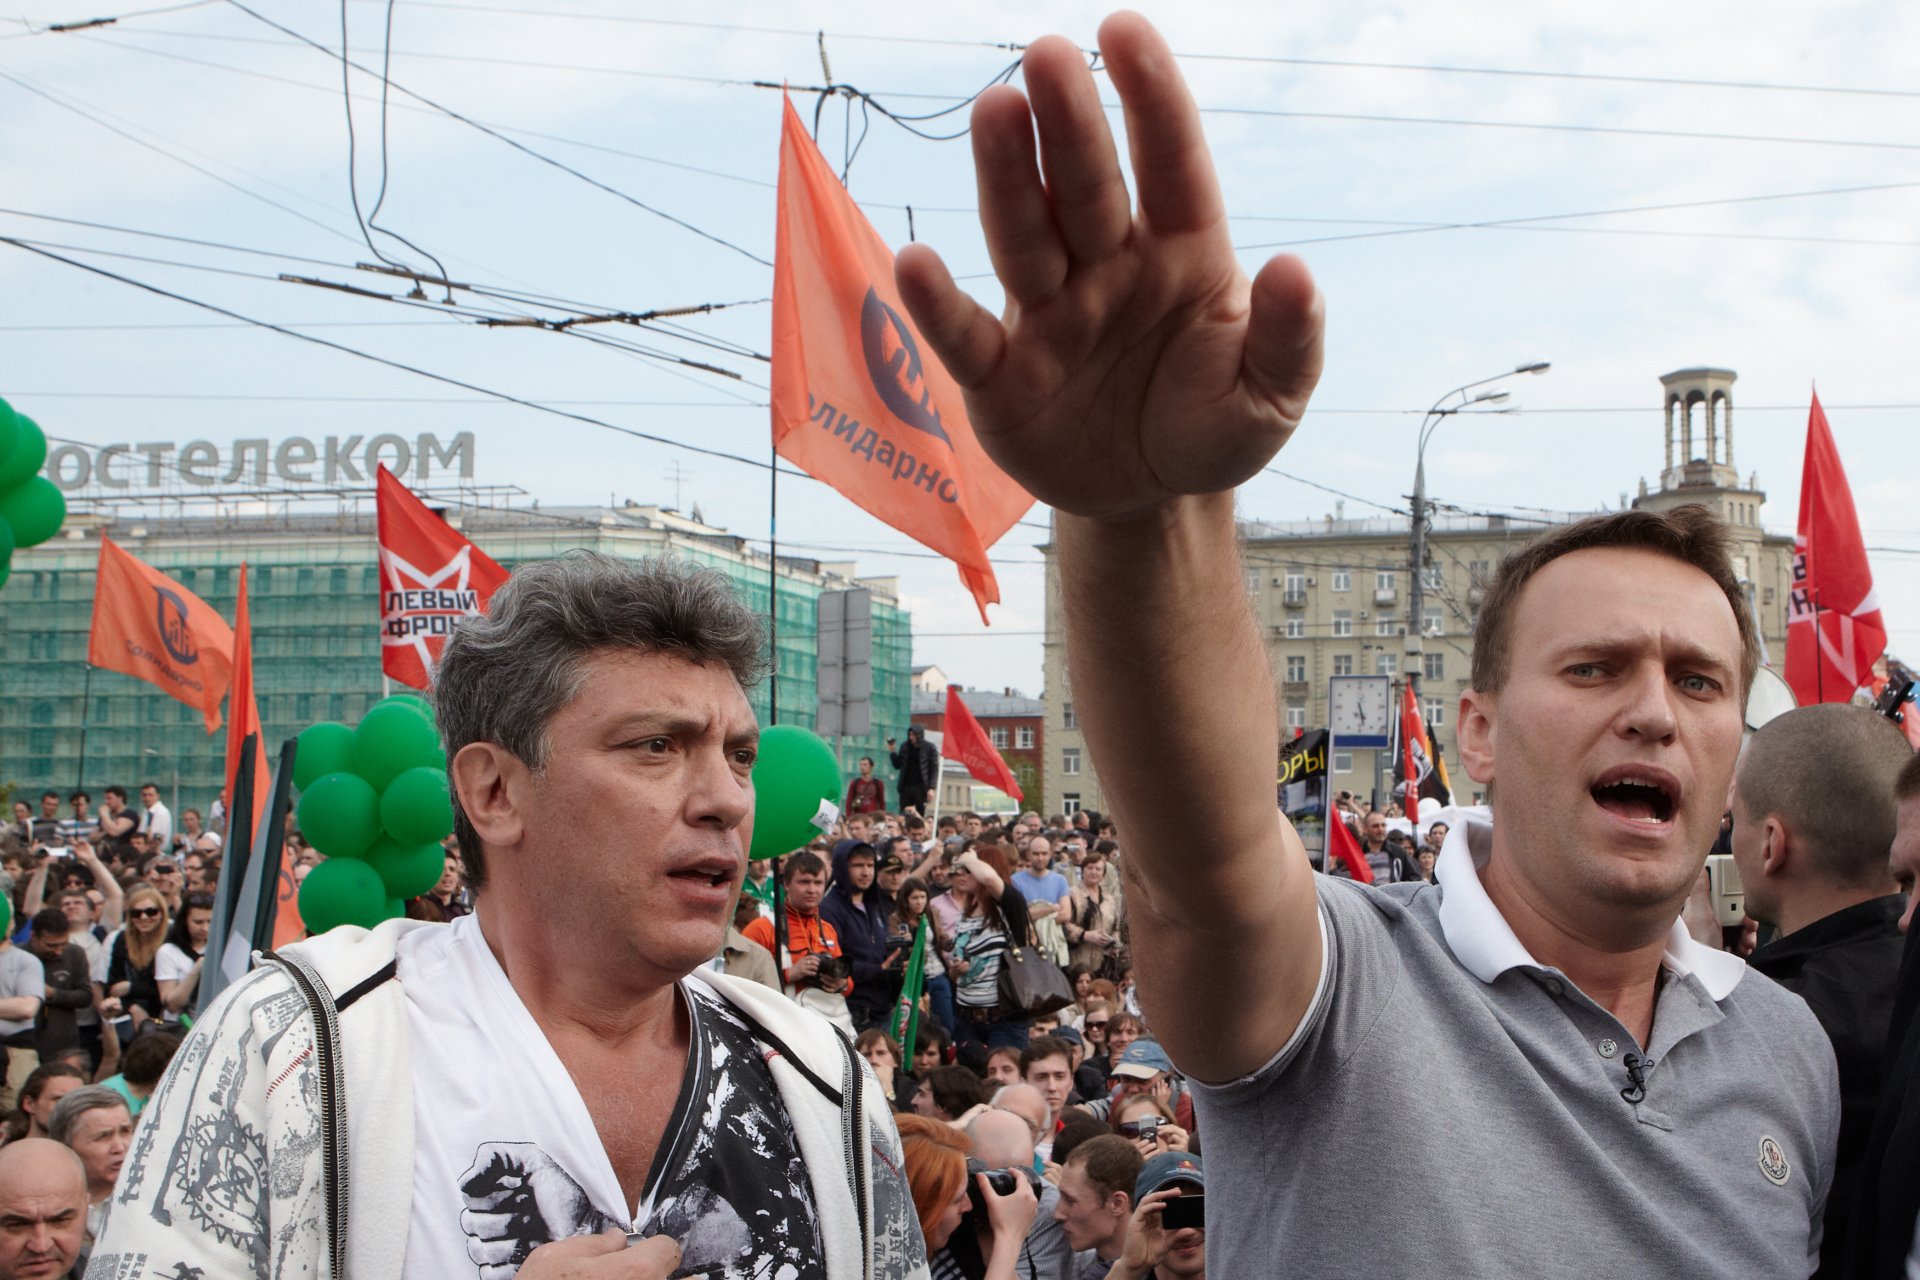 6 май 2012 г. - Лидерите на опозицията Борис Немцов (вляво) и Алексей Навални по време на протестен митинг "Марш на милионите" срещу Владимир Путин в Москва. Над 250 души бяха арестувани, включително лидери на опозицията. 